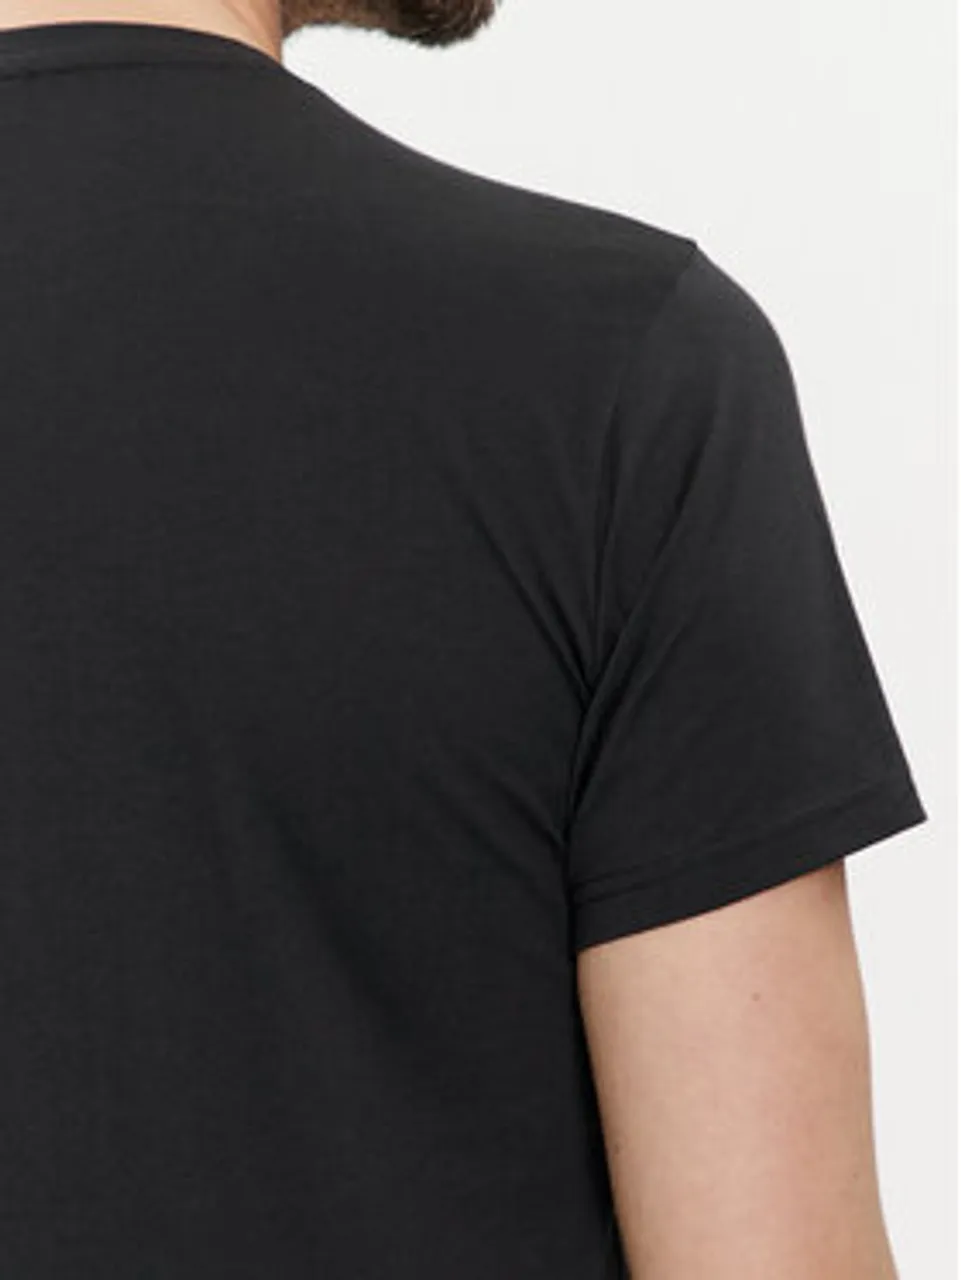 Emporio Armani Underwear T-Shirt 211818 4R468 36021 Schwarz Regular Fit